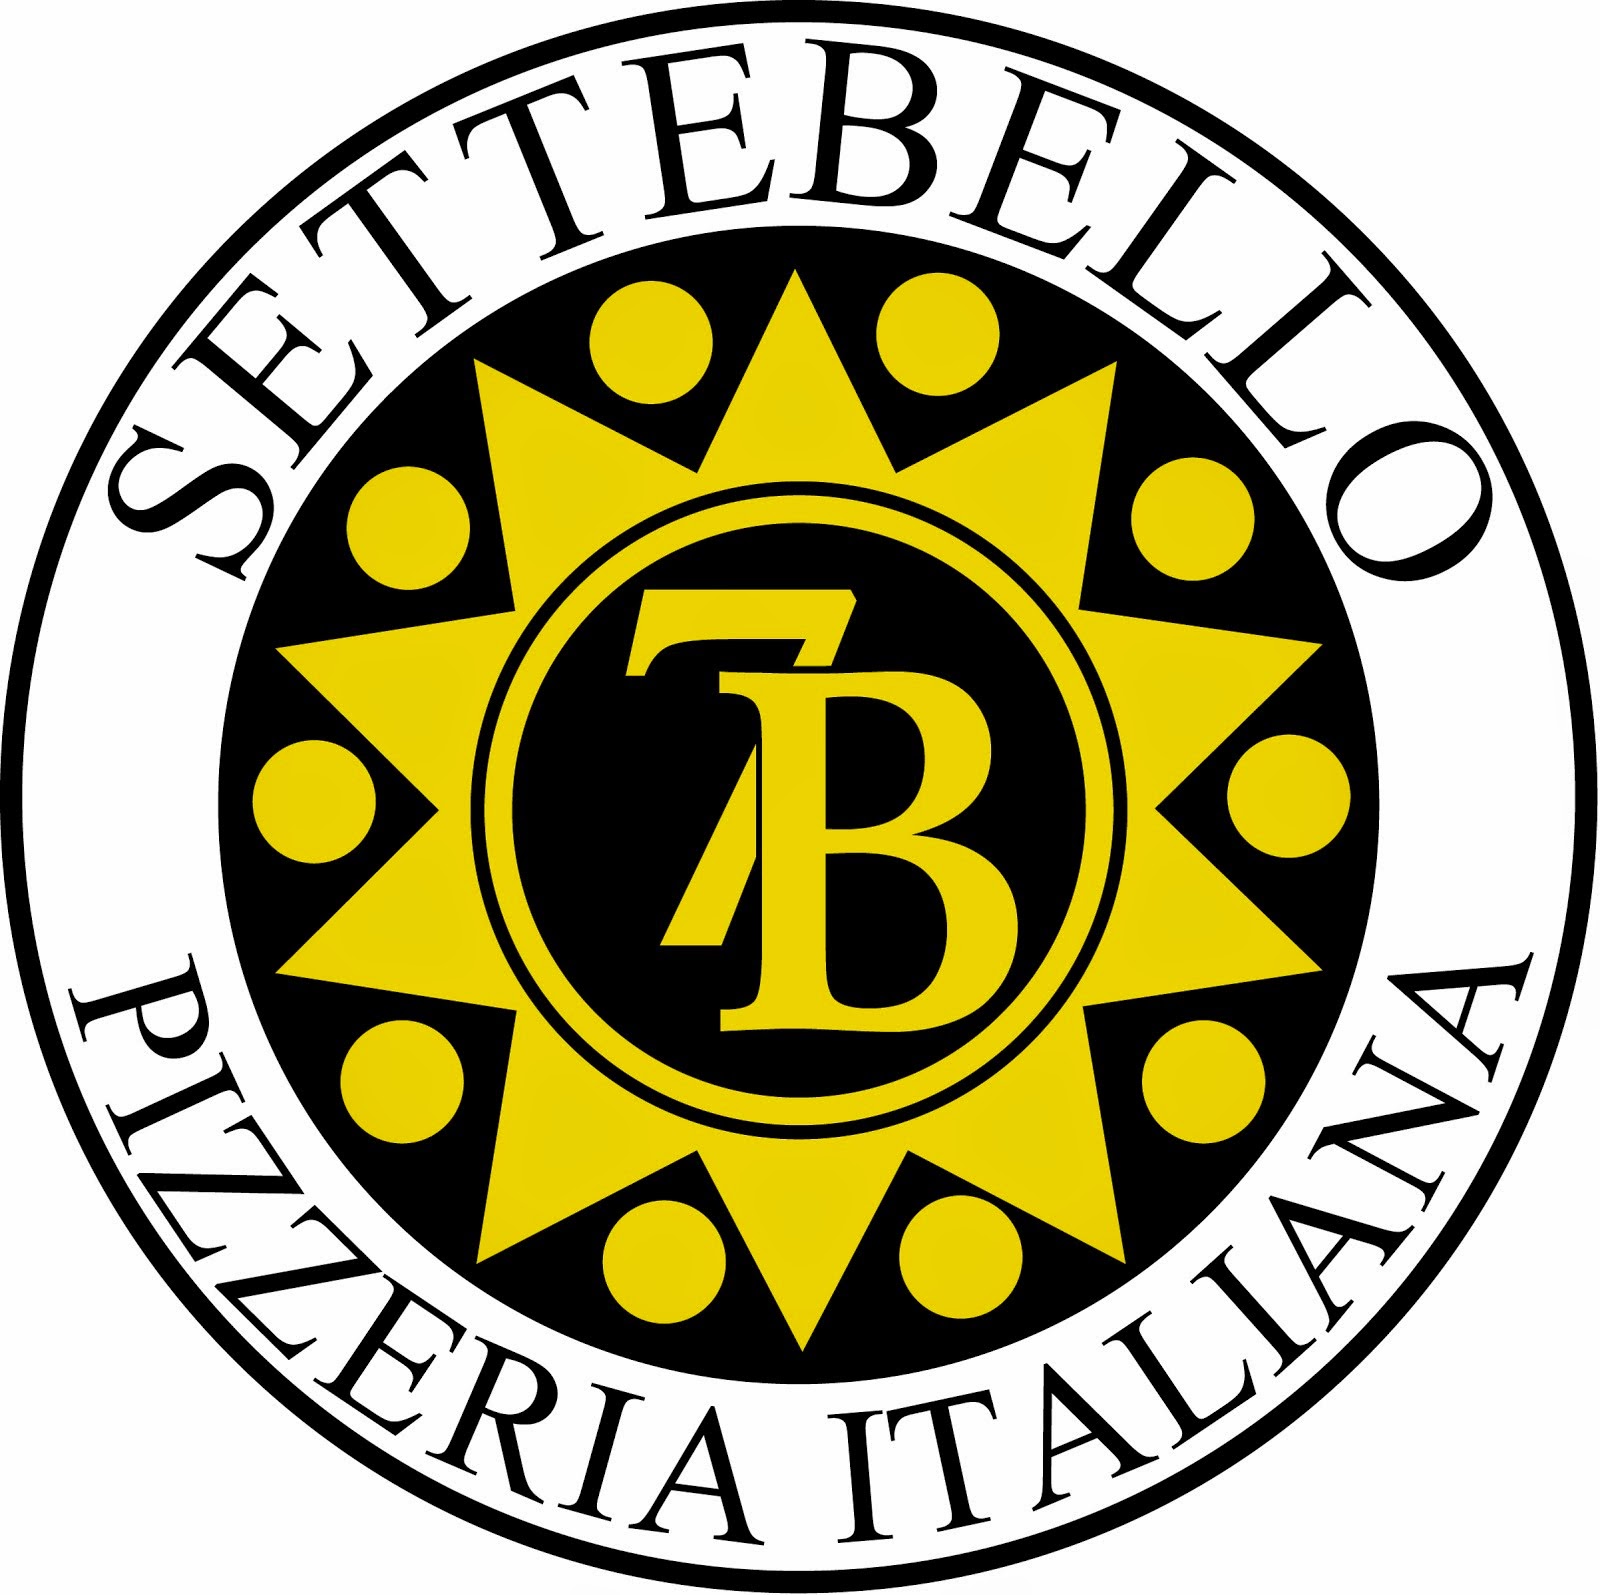 15% off at Settebello Pizzeria Italiana